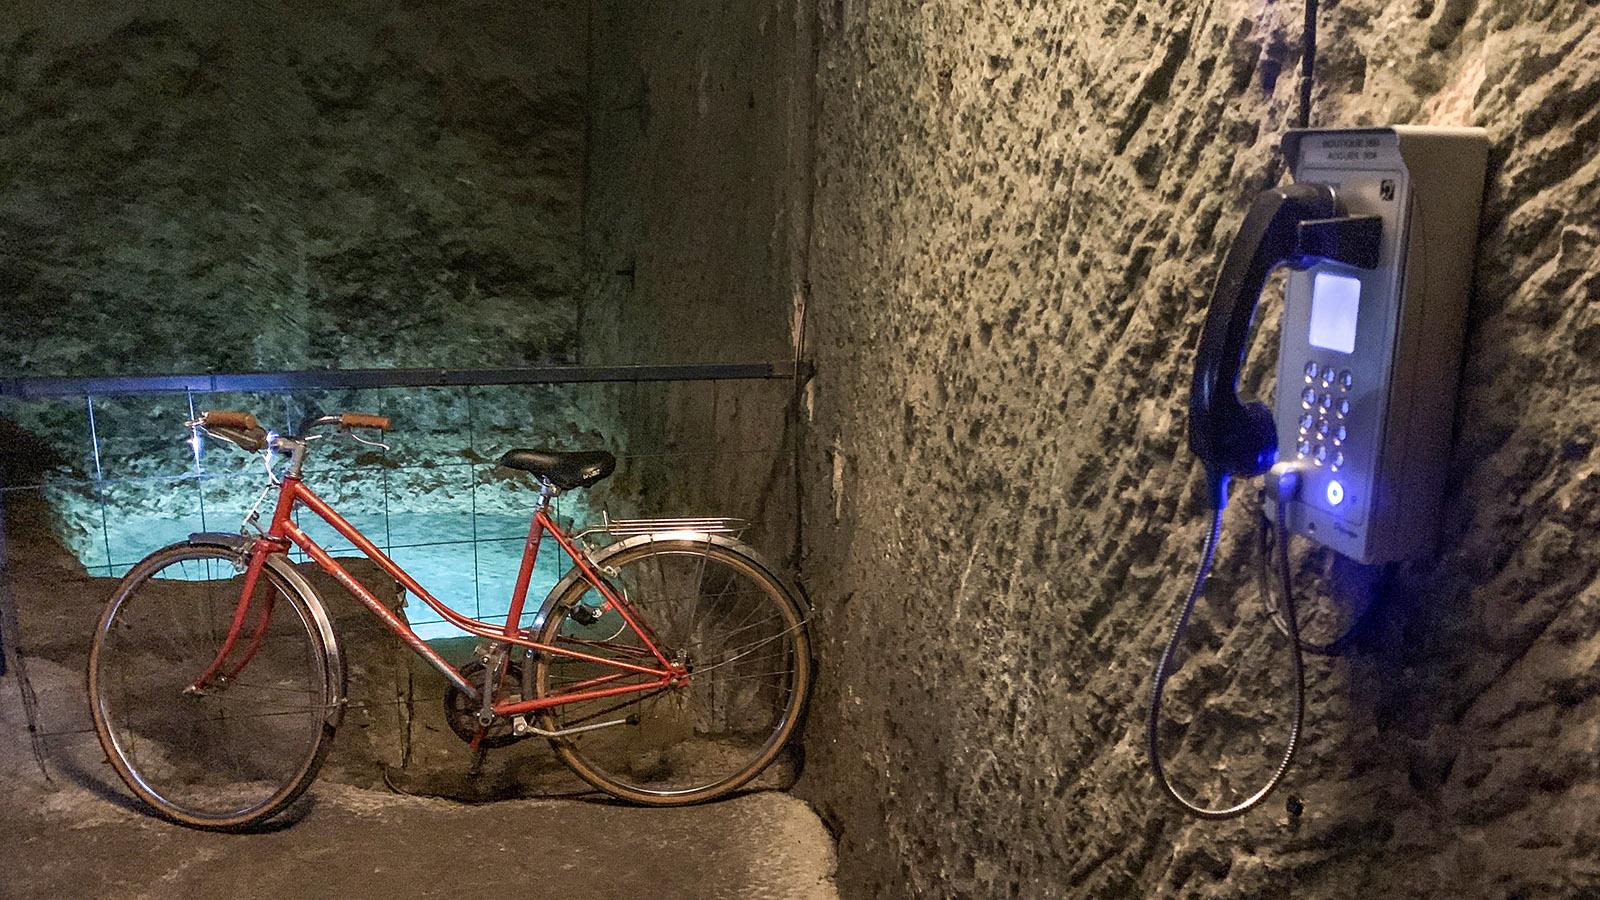 Die Keller-Quelle von Bouvet-Ladubay. Für Sicherheit bei der Radtour sorgt ein Notfall-Telefon. Foto: Hilke Maunder